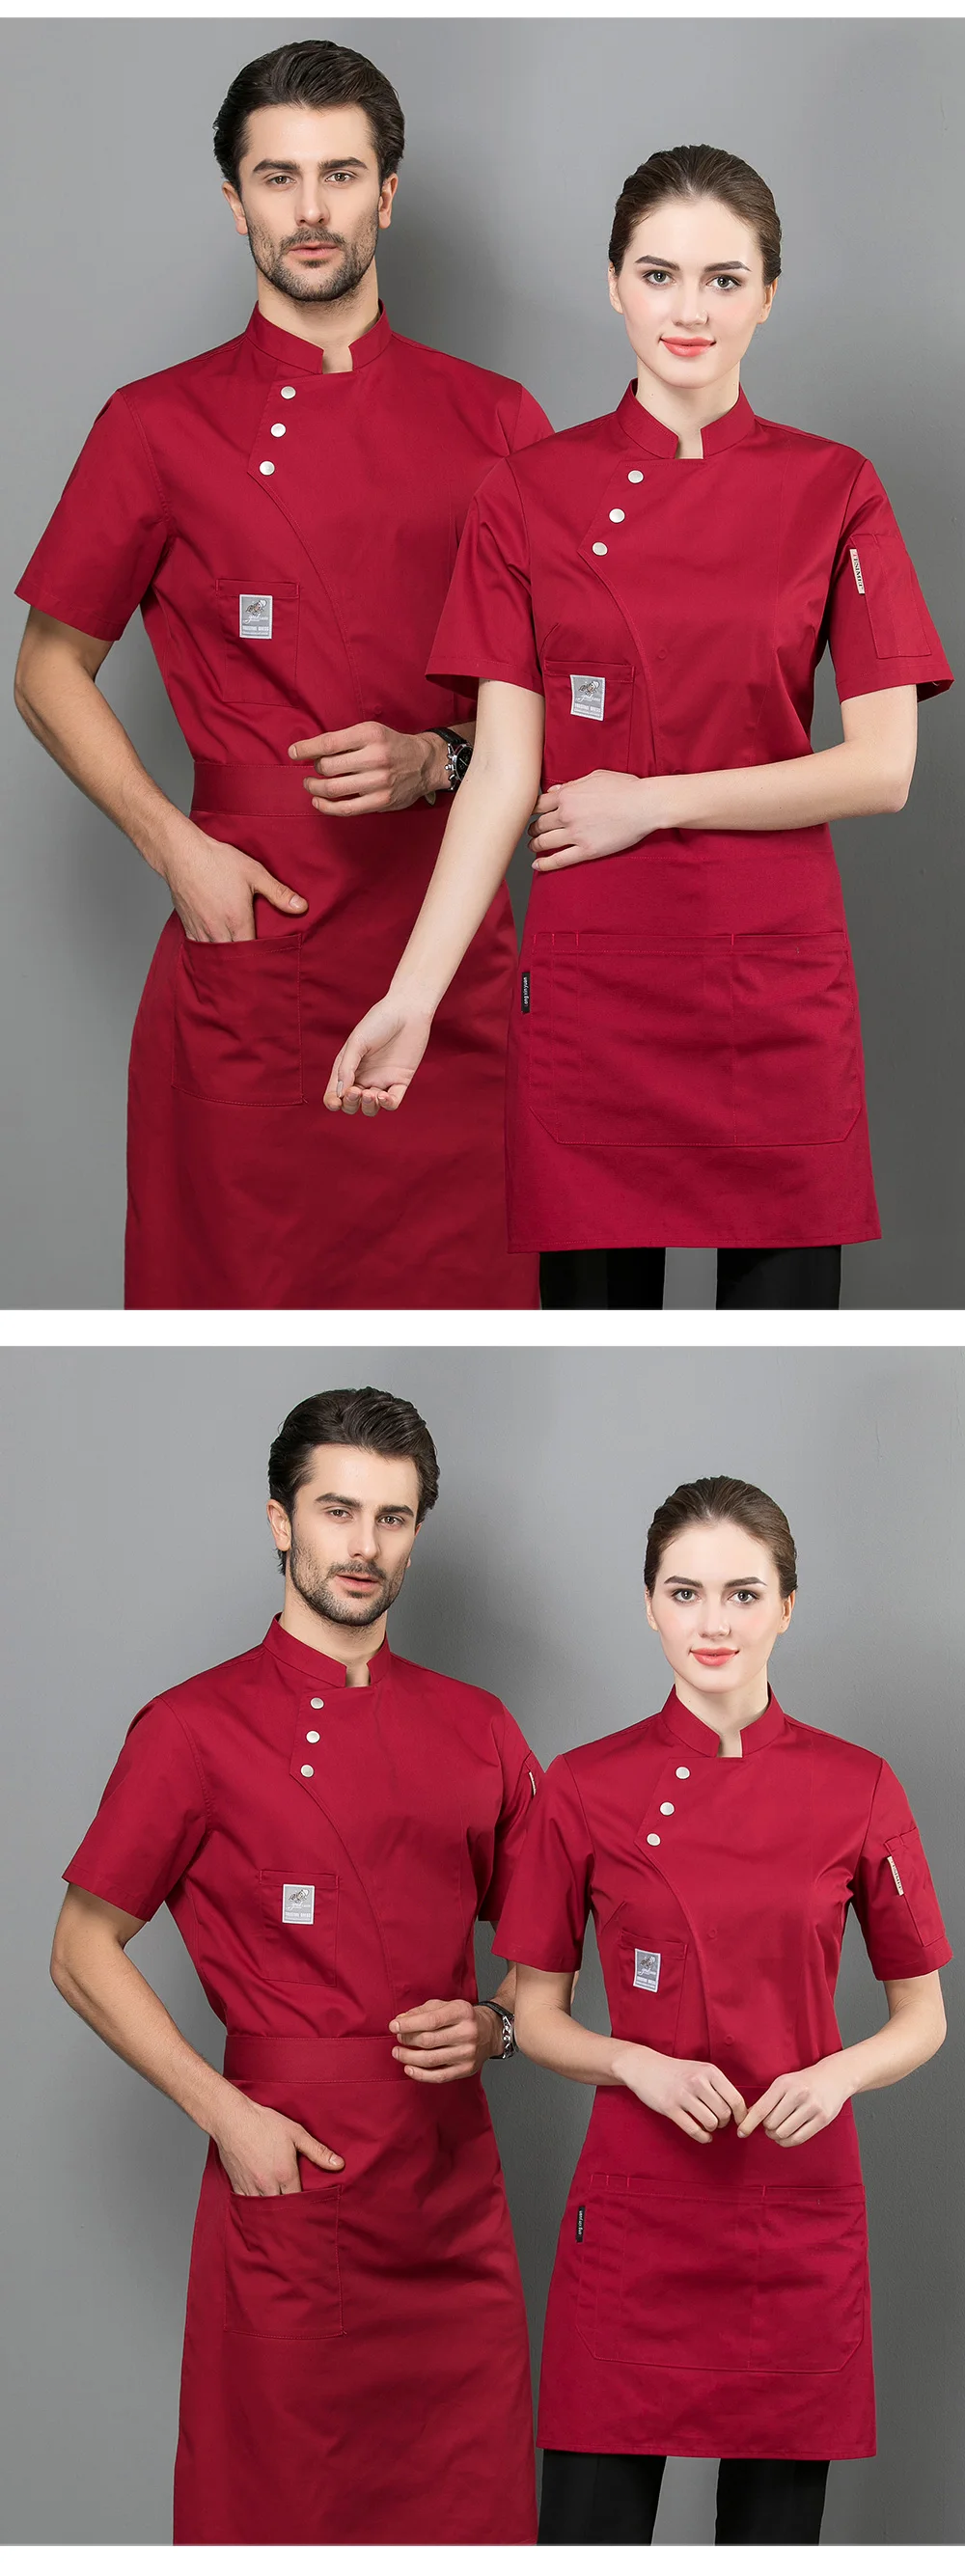 Высококачественные гостиничные ресторанные форменные футболки с короткими рукавами на одно плечо, кухня, рабочая одежда шеф-повара, рабочая одежда для мужчин, 4 цвета